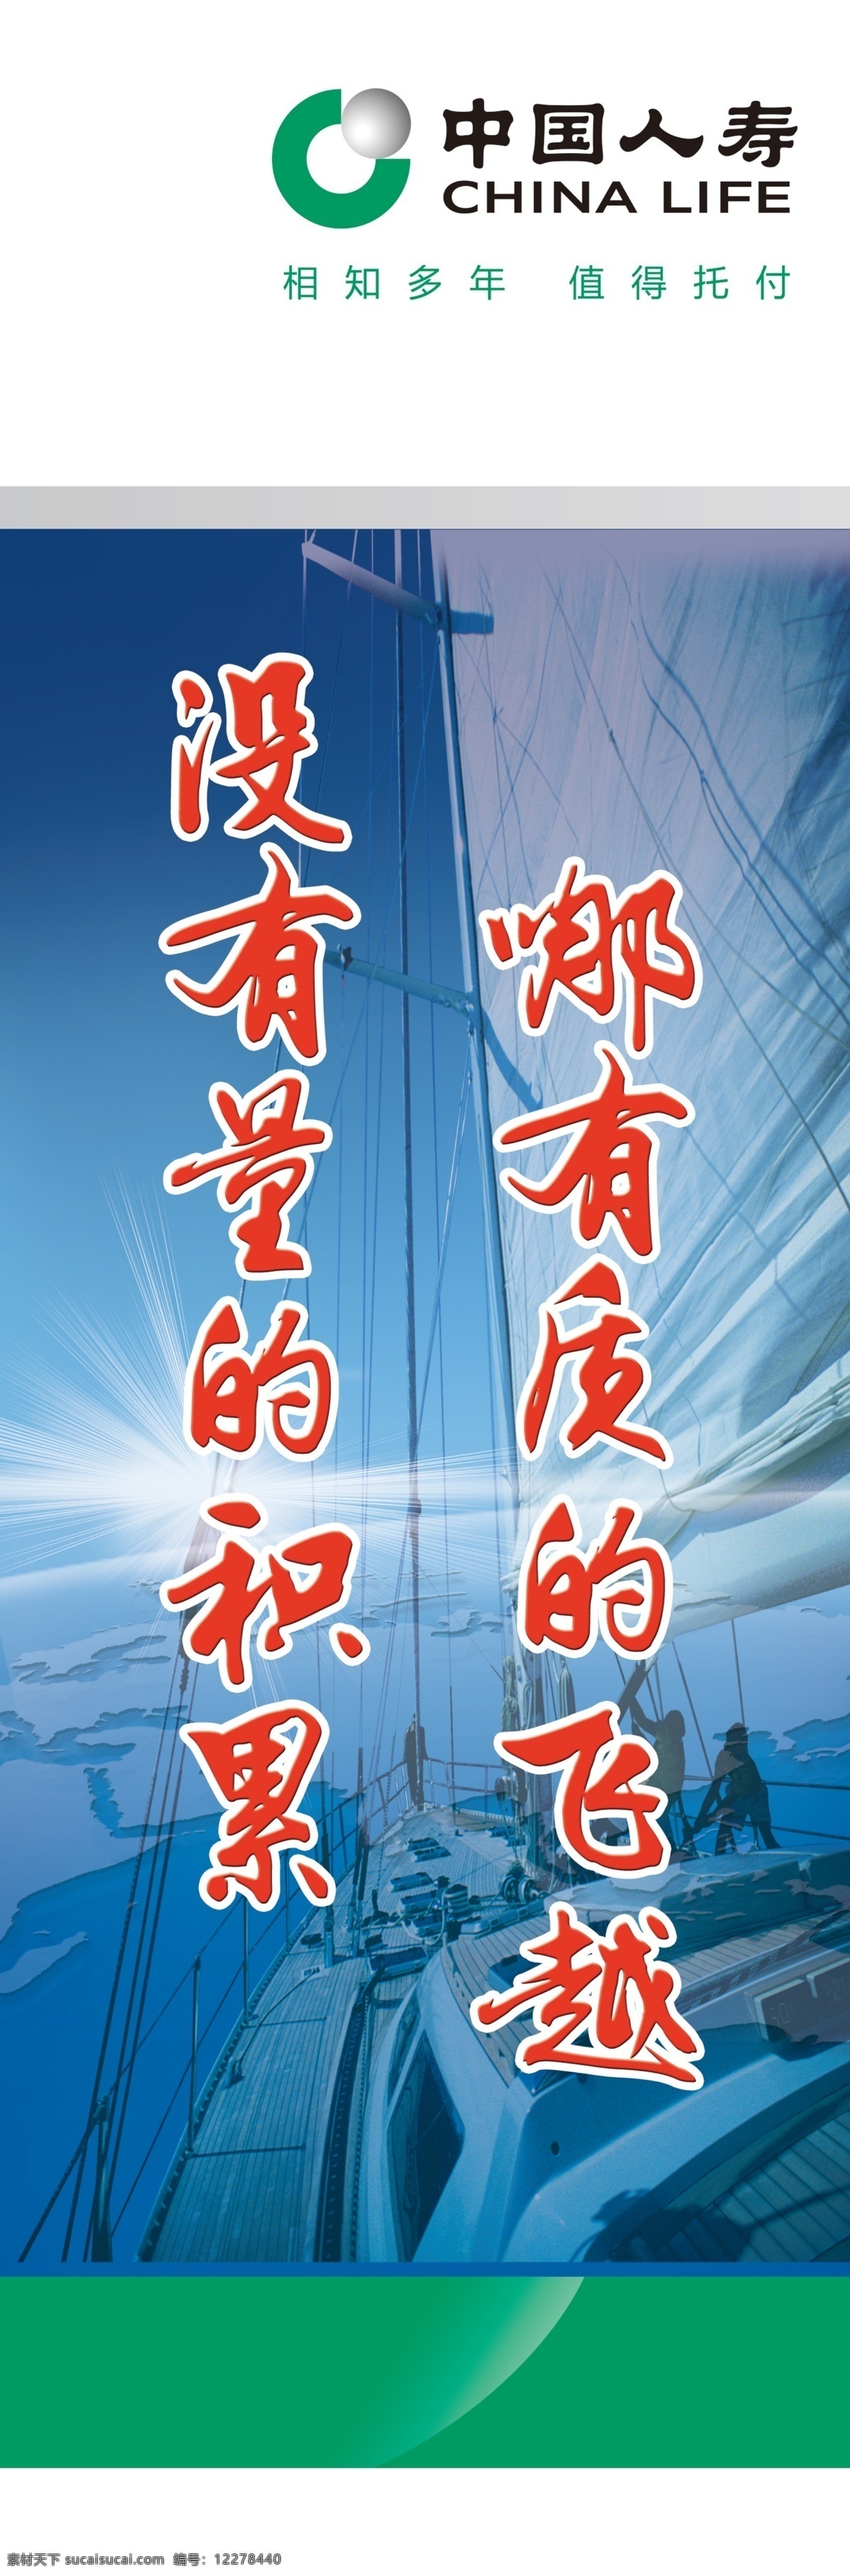 营销 团队 职场 立柱 标语 中国 人寿 寿险 保险 相知 多年 值得 托付 远航 航线 航行 风帆 地球 海洋 没有 量 积累 质量 飞越 扬帆远航 分层